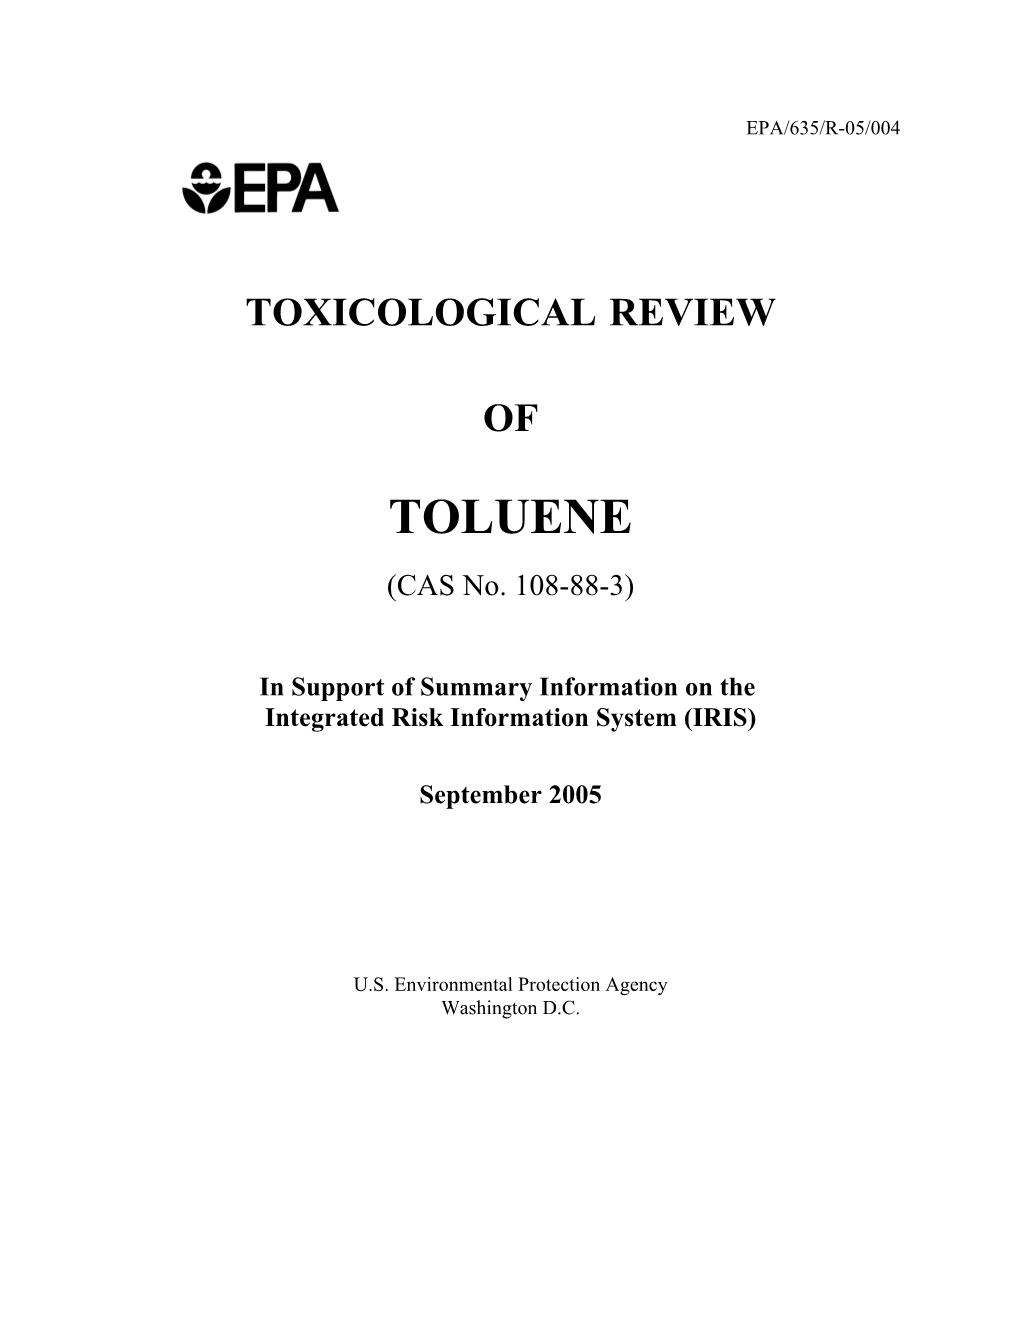 TOXICOLOGICAL REVIEW of TOLUENE (CAS No